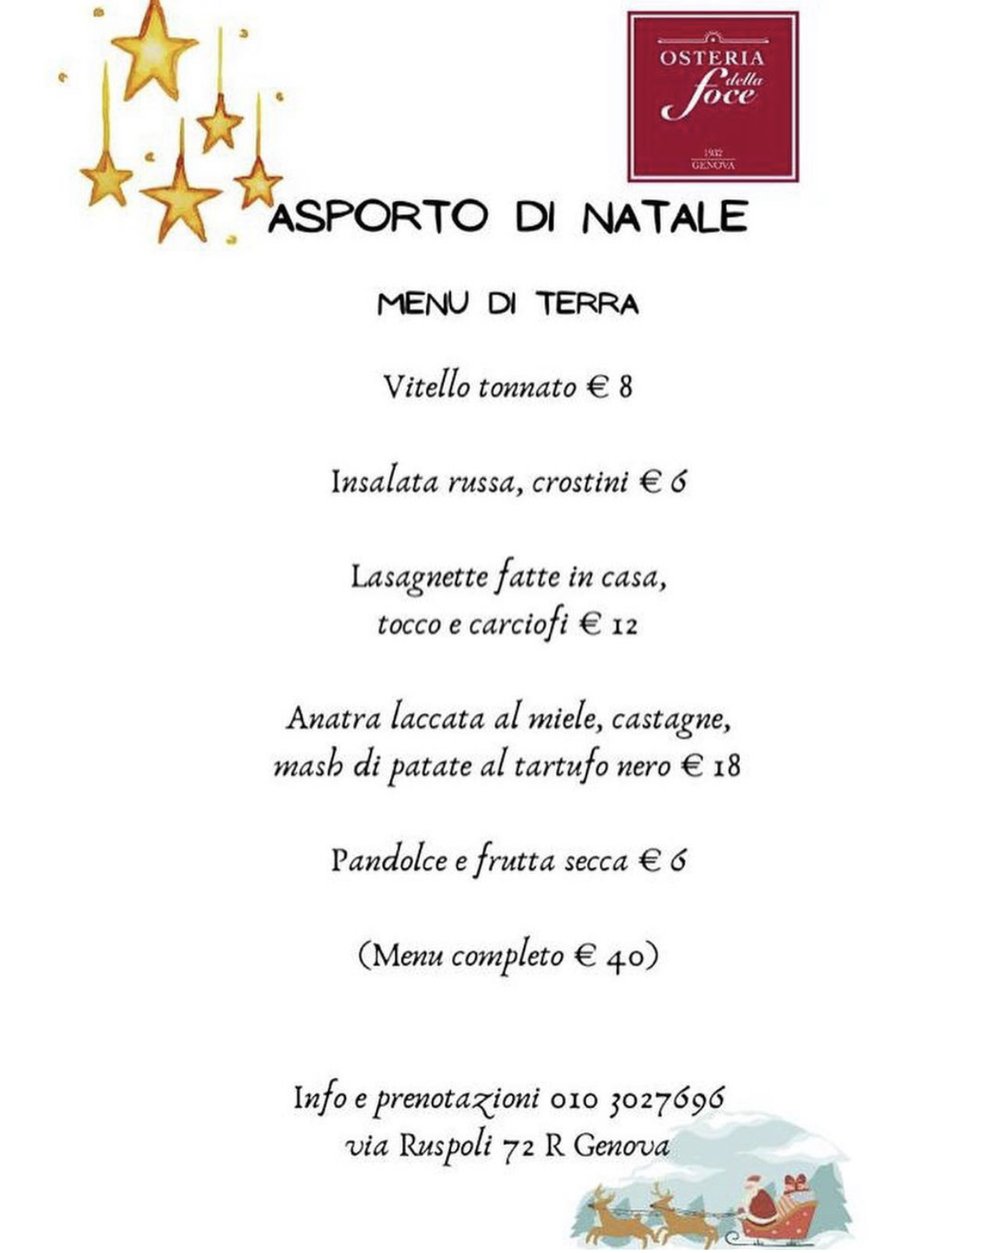 menu-natale-genova-osteria-della-foce-2.jpg